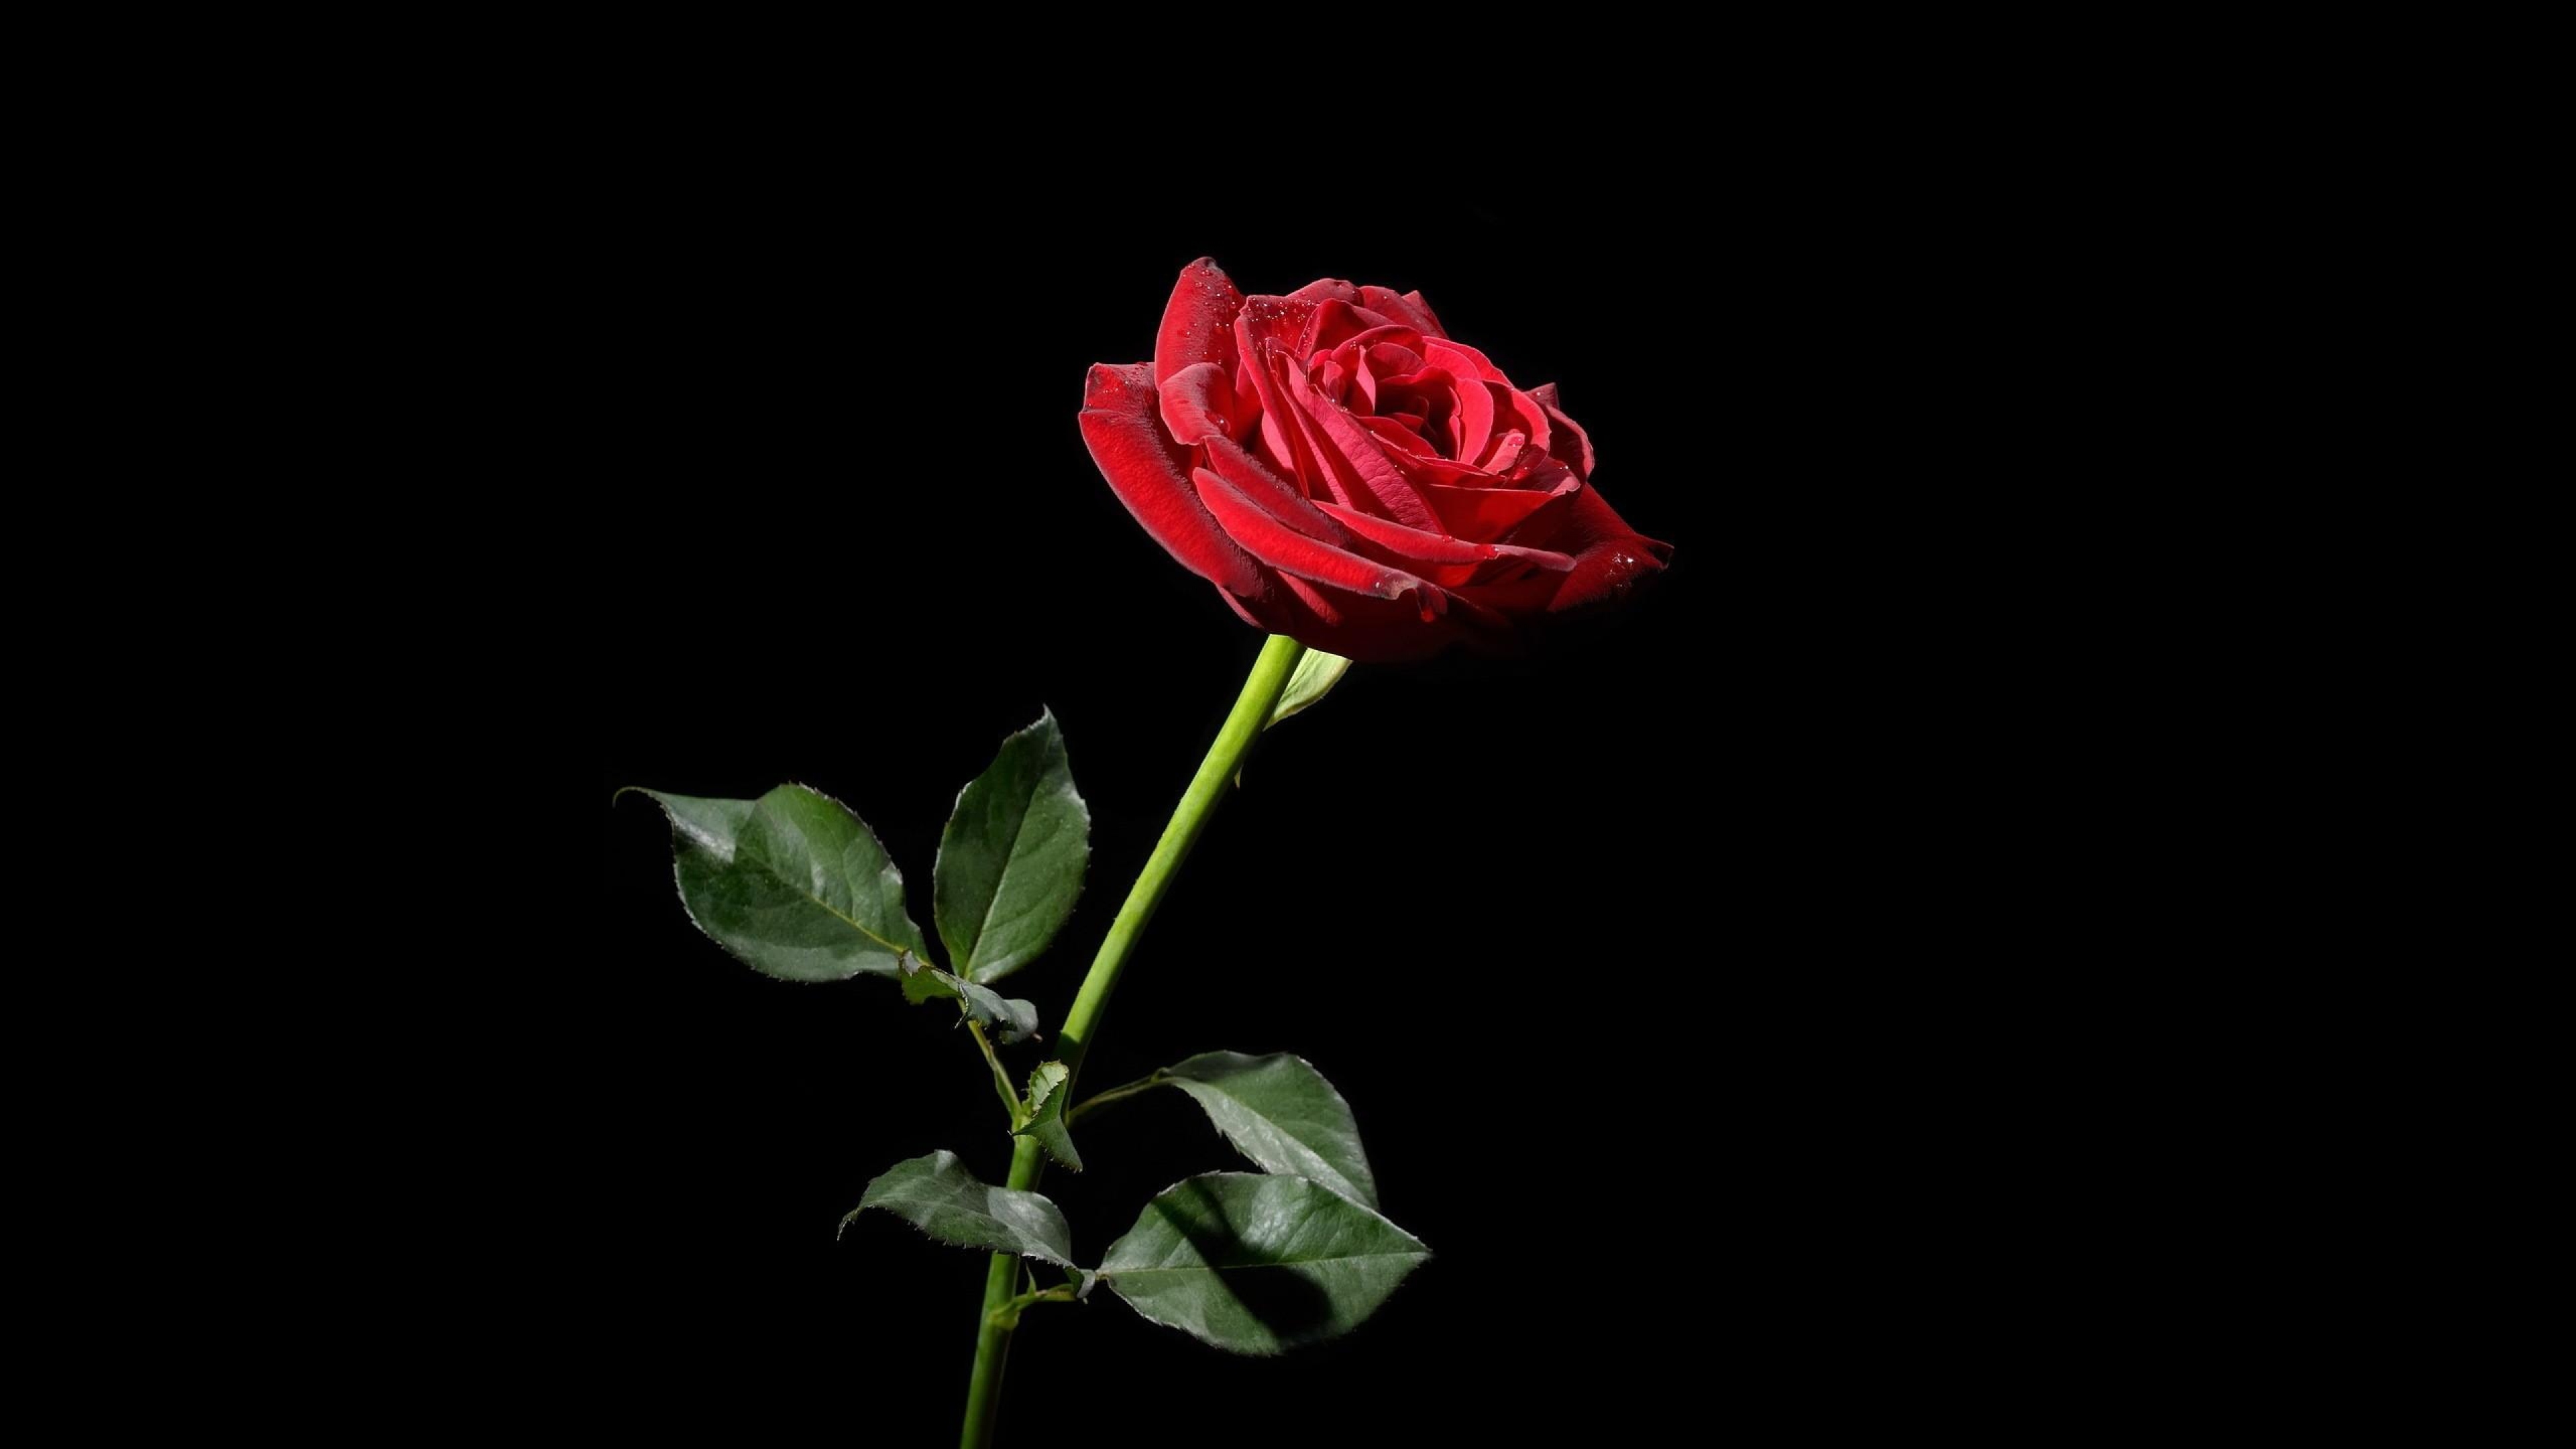 ð¥ Download Rose Red Flower Black Background Wallpaper 4k Ultra HD by